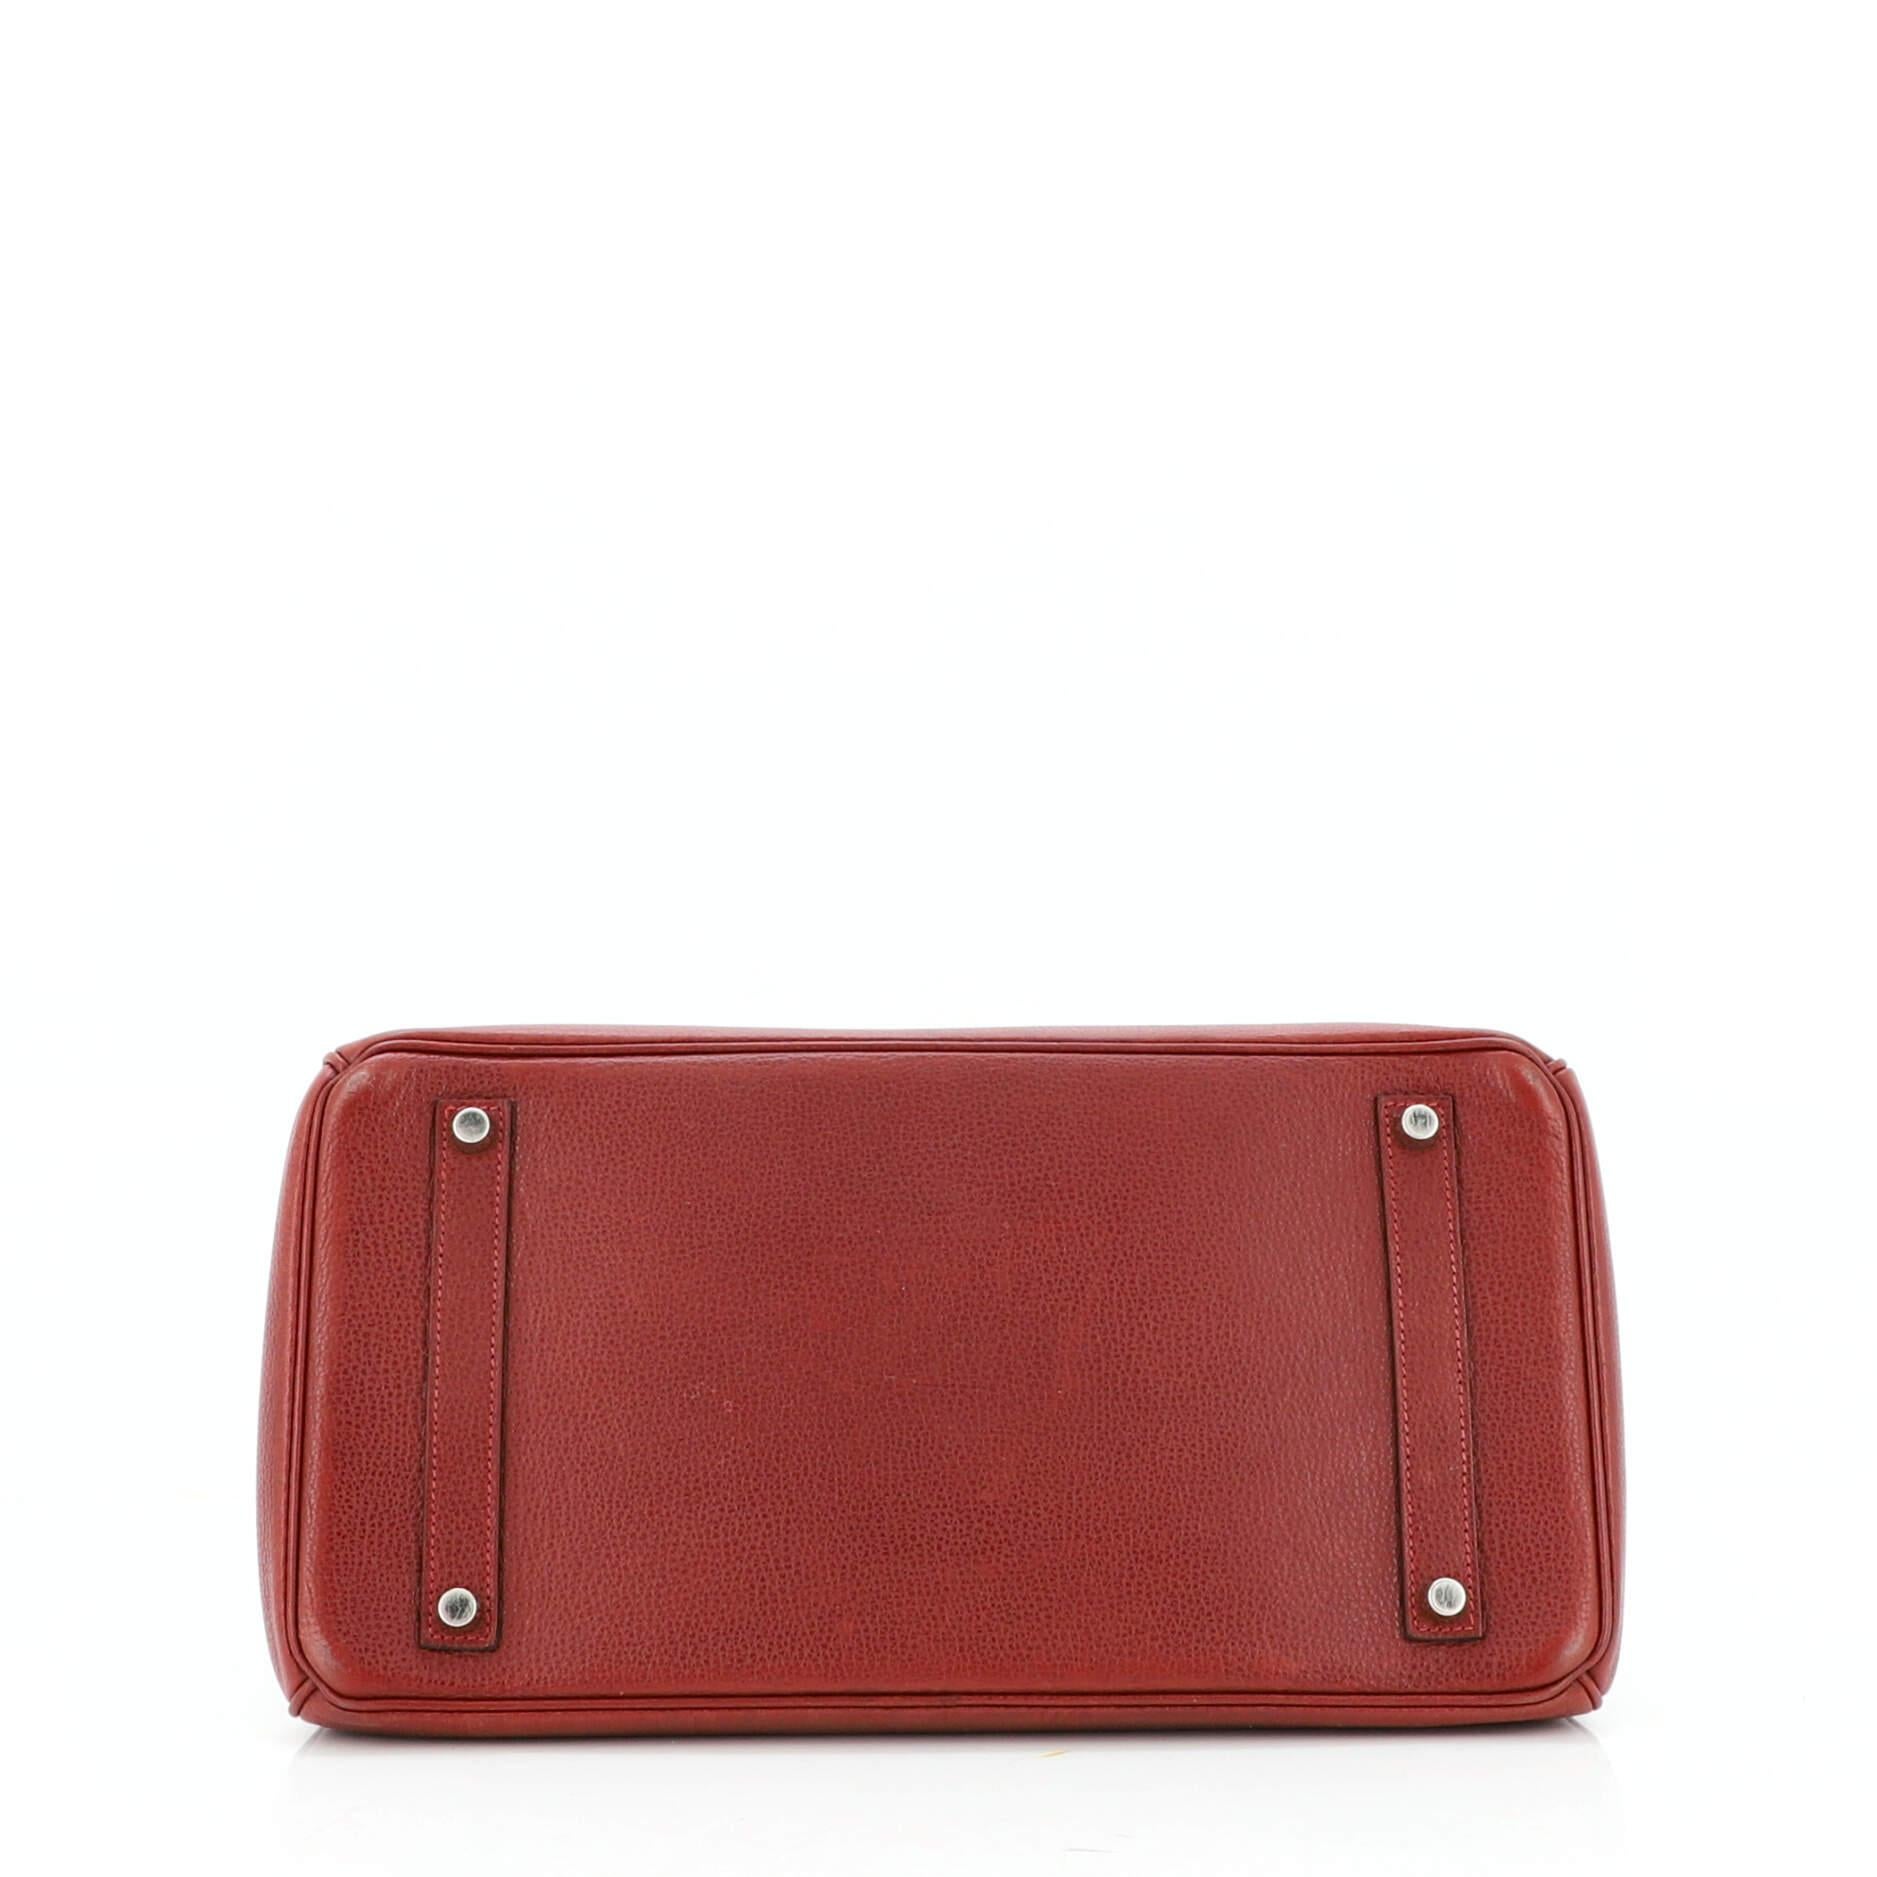 Brown Hermes Birkin Handbag Rouge H Vache Liegee with Palladium Hardware 35